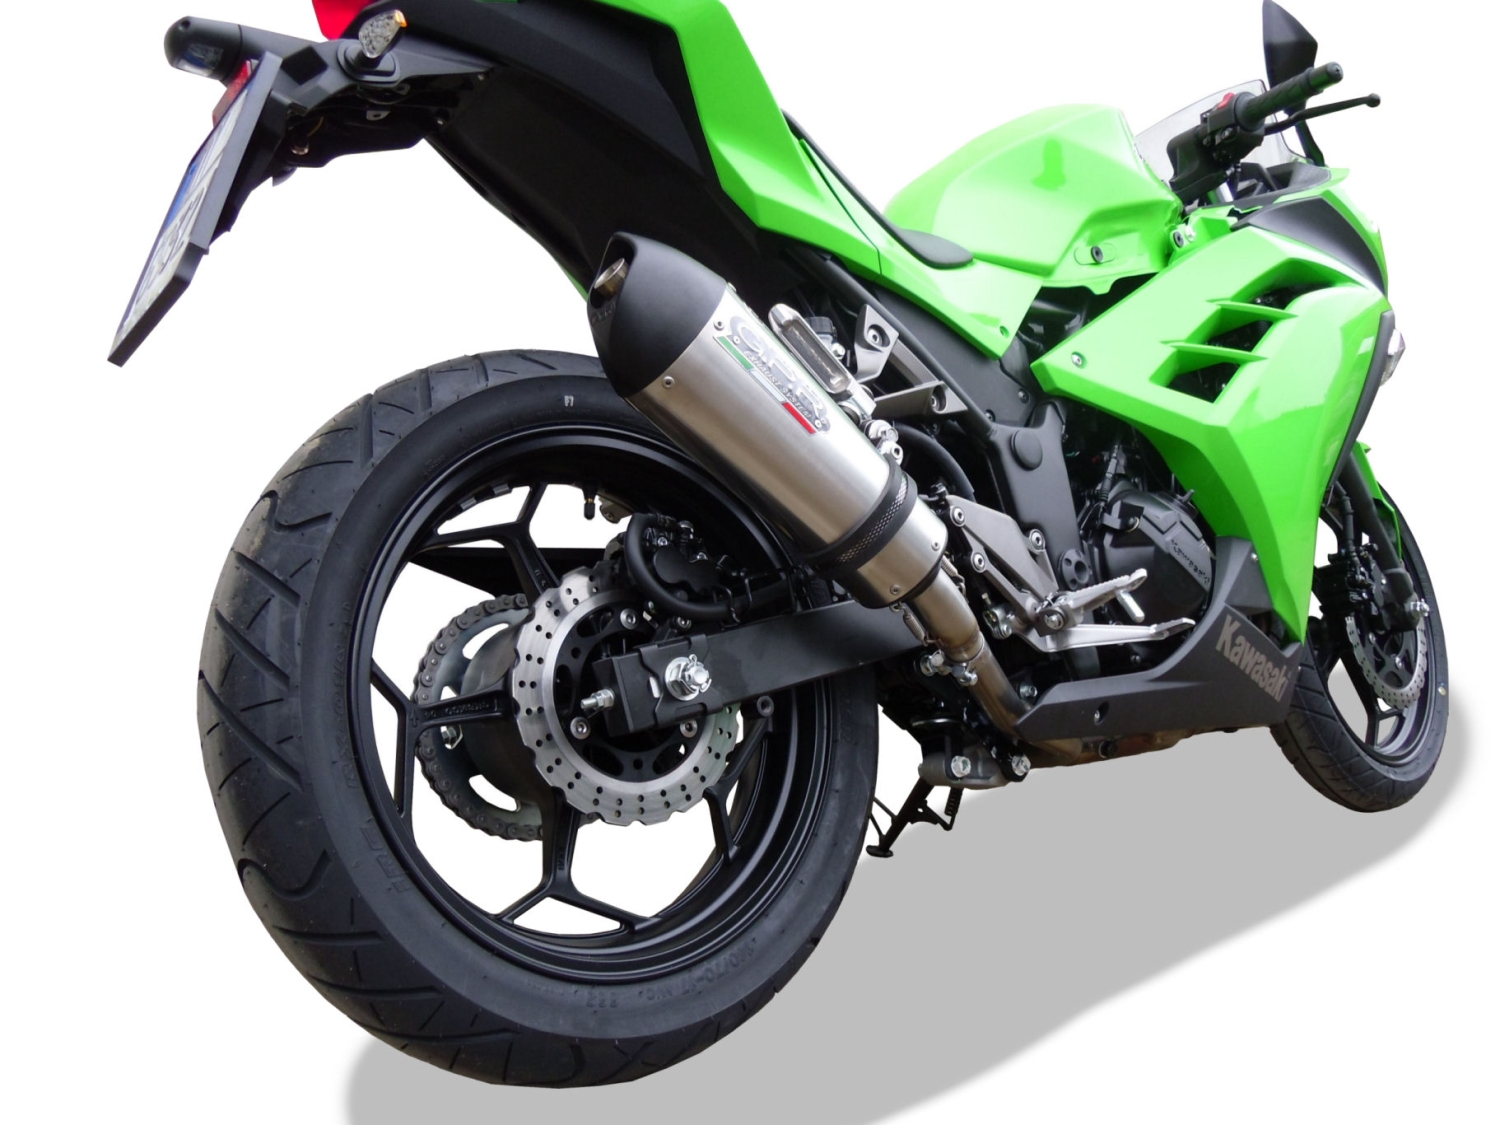 Scarico compatibile con Kawasaki Ninja 300 R 2012-2017, Gpe Ann. titanium, Scarico omologato, silenziatore con db killer estraibile e raccordo specifico